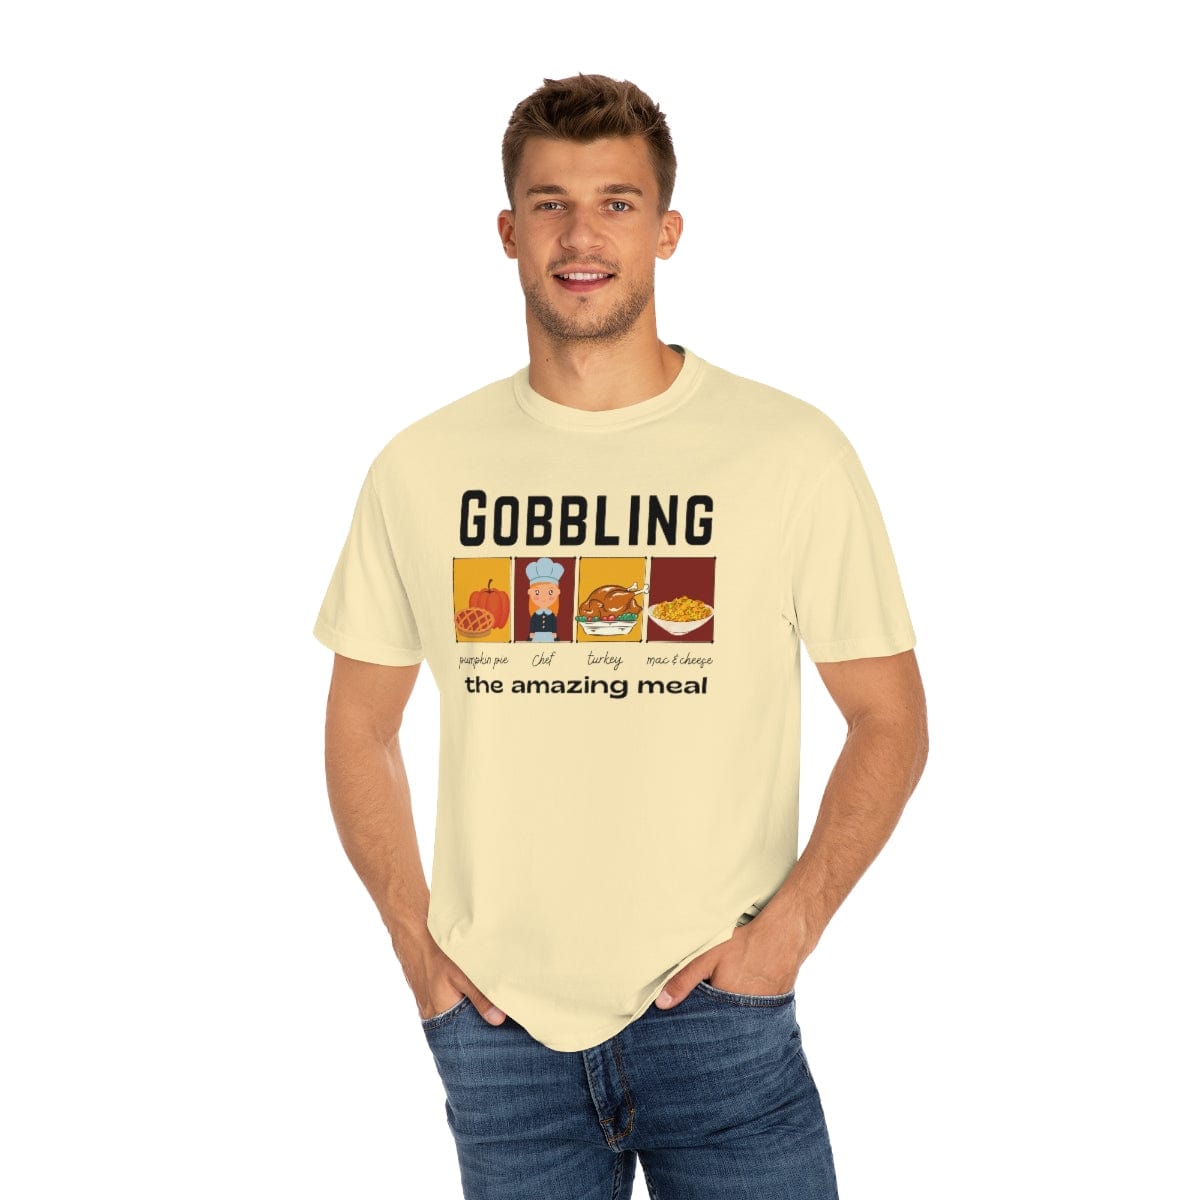 Gobbling T-Shirt For Women Girl